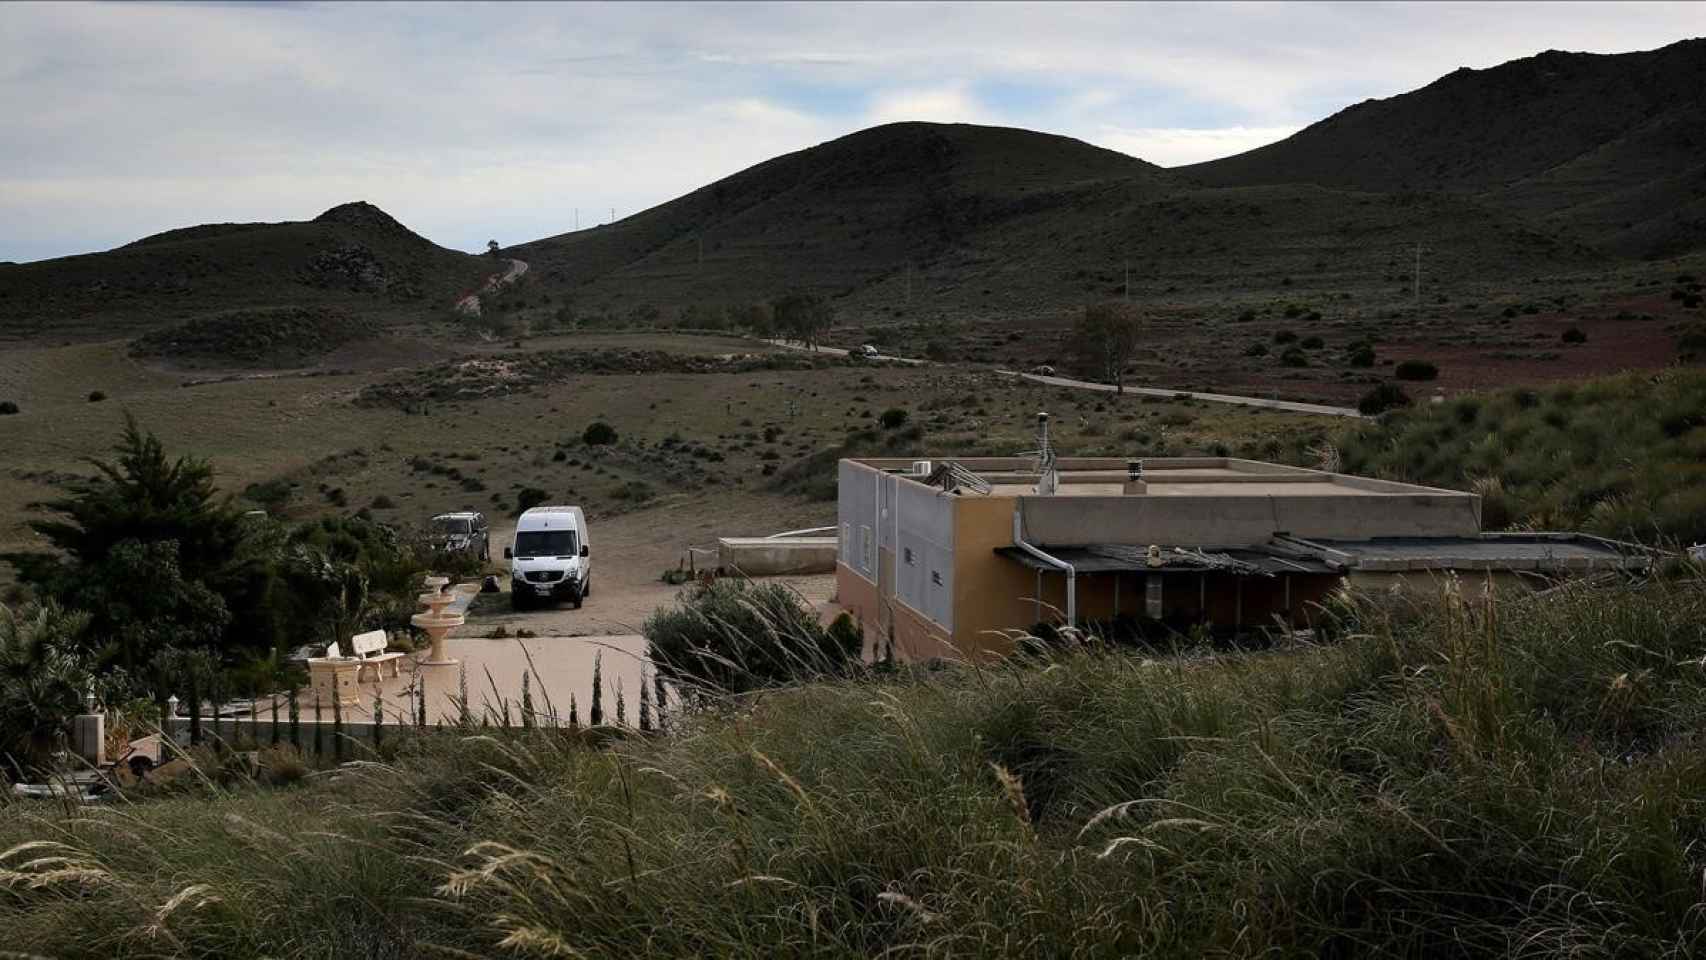 Finca de Rodalquilar (Níjar, Almería) en la que Ana Julia Quezada entierra al menor durante 12 días.